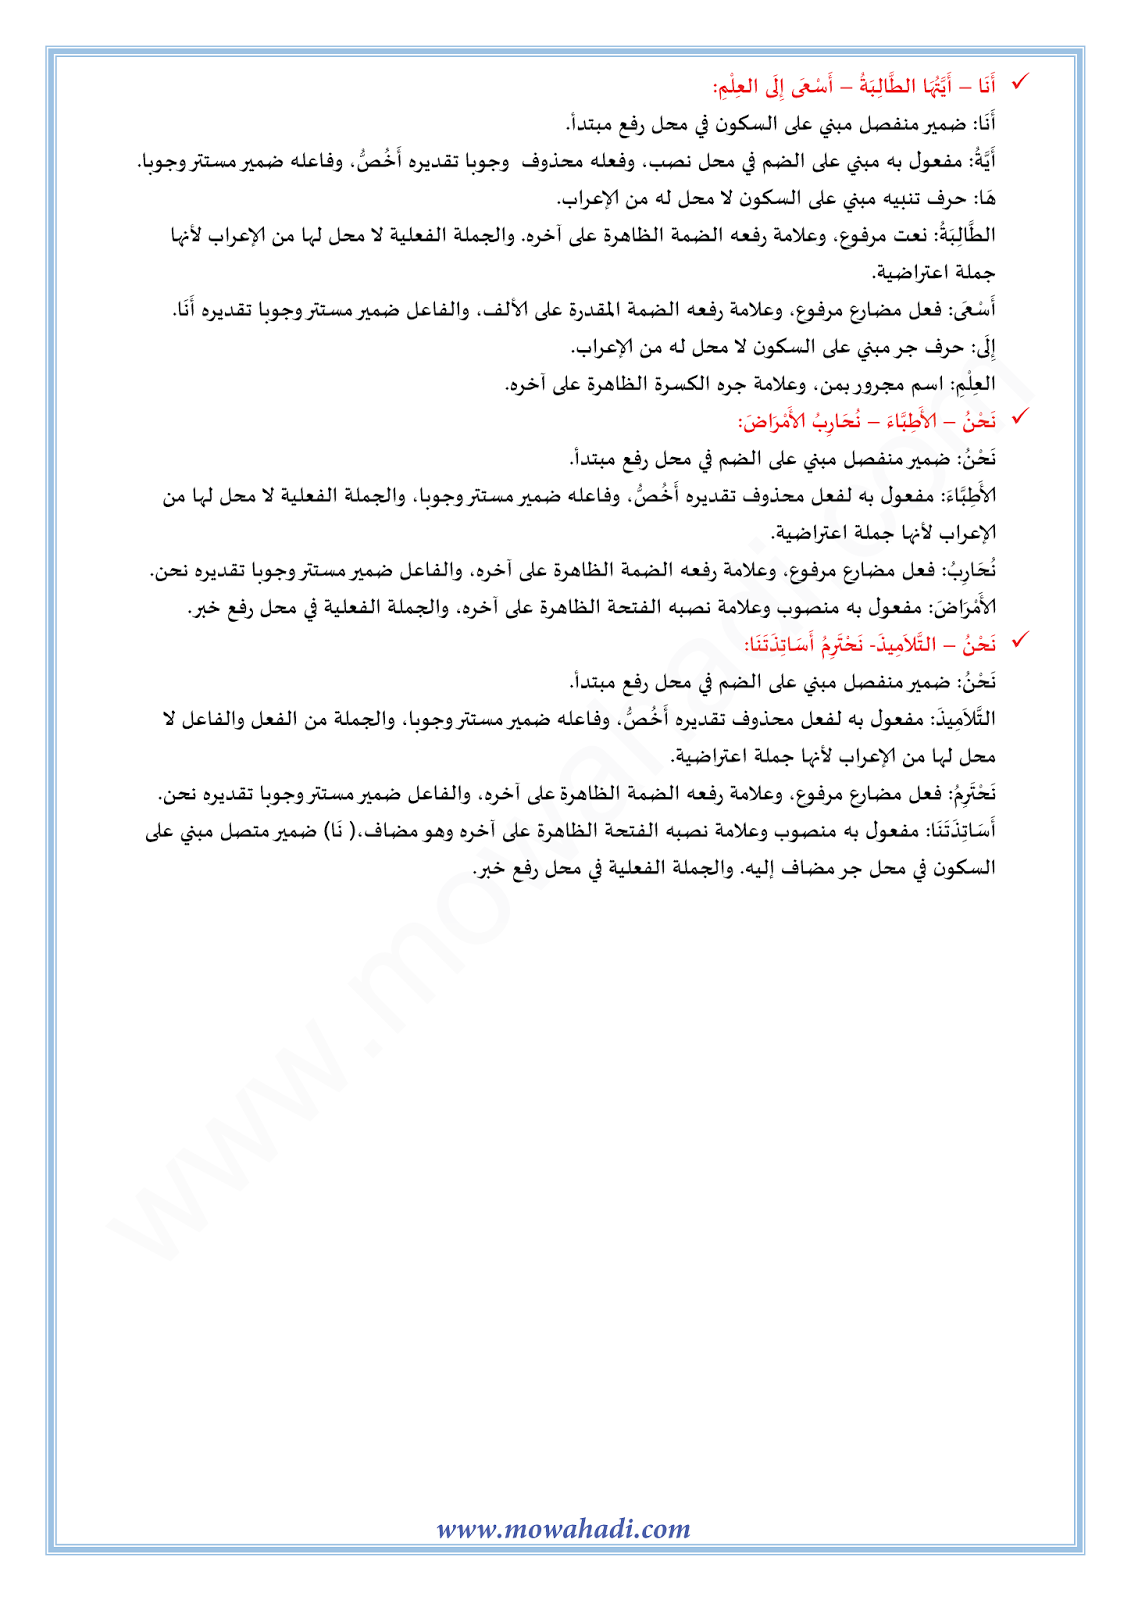 الدرس اللغوي أسلوب الاختصاص للسنة الثالثة اعدادي في مادة اللغة العربية 12-cours-dars-loghawi3_003